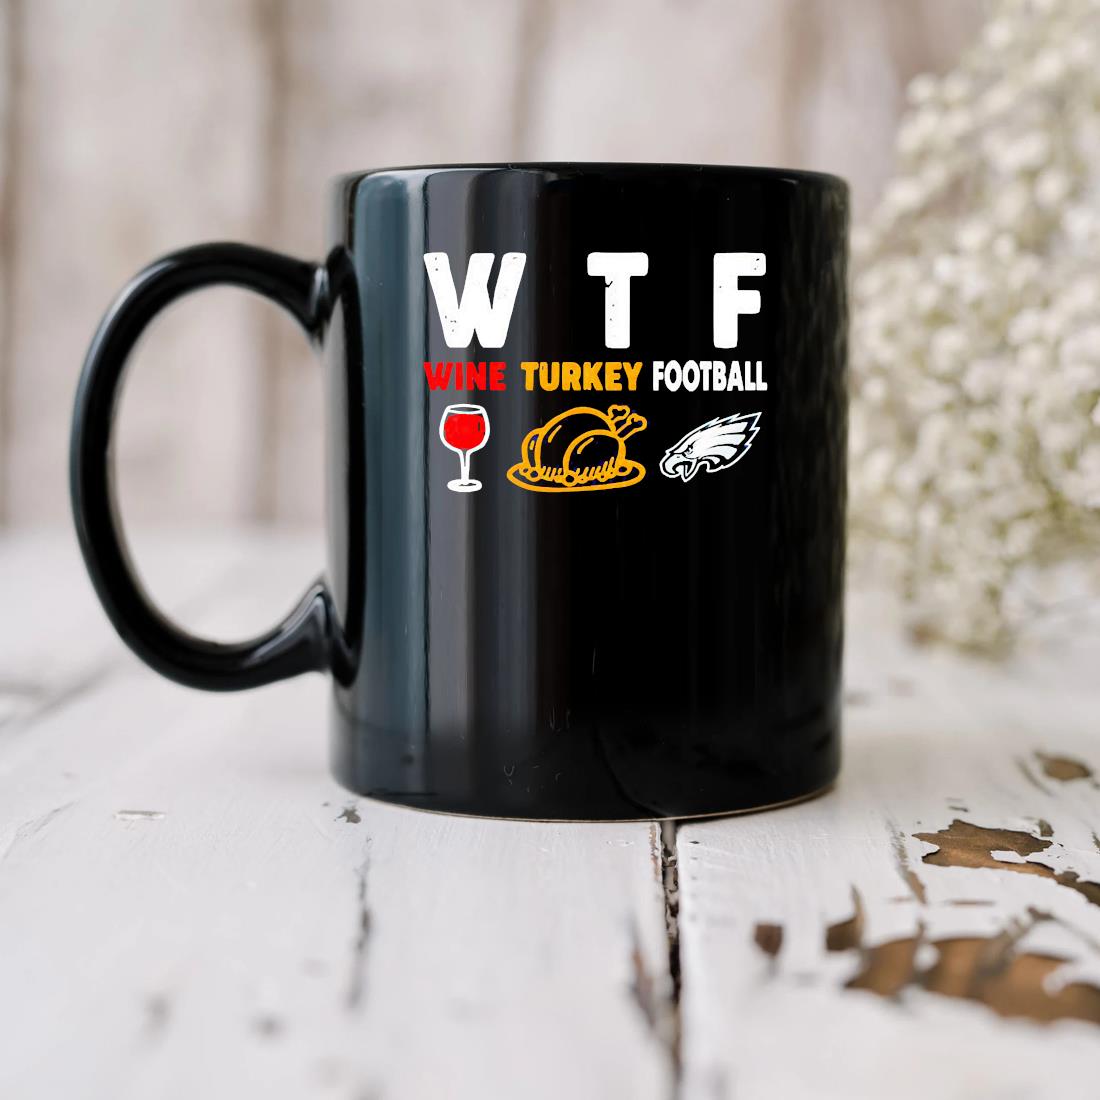 Wtf Wine Turkey Football Philadelphia Eagles Mug